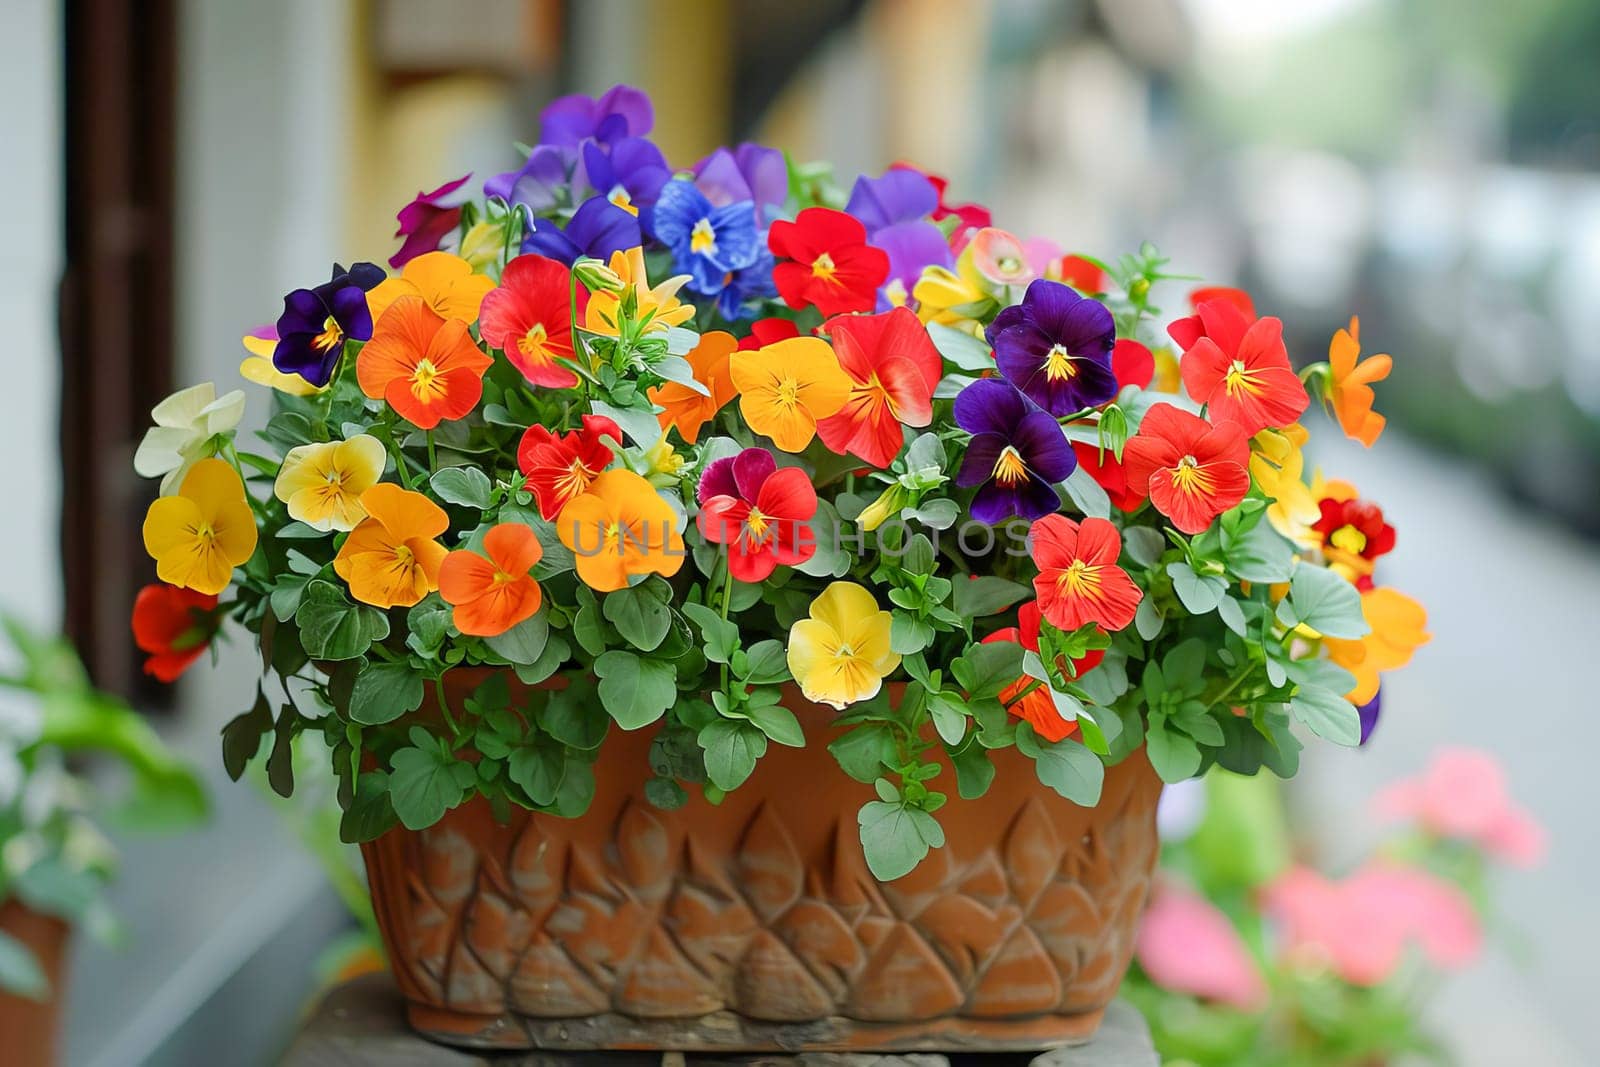 Beautiful blooming flowers in a container. by OlgaGubskaya